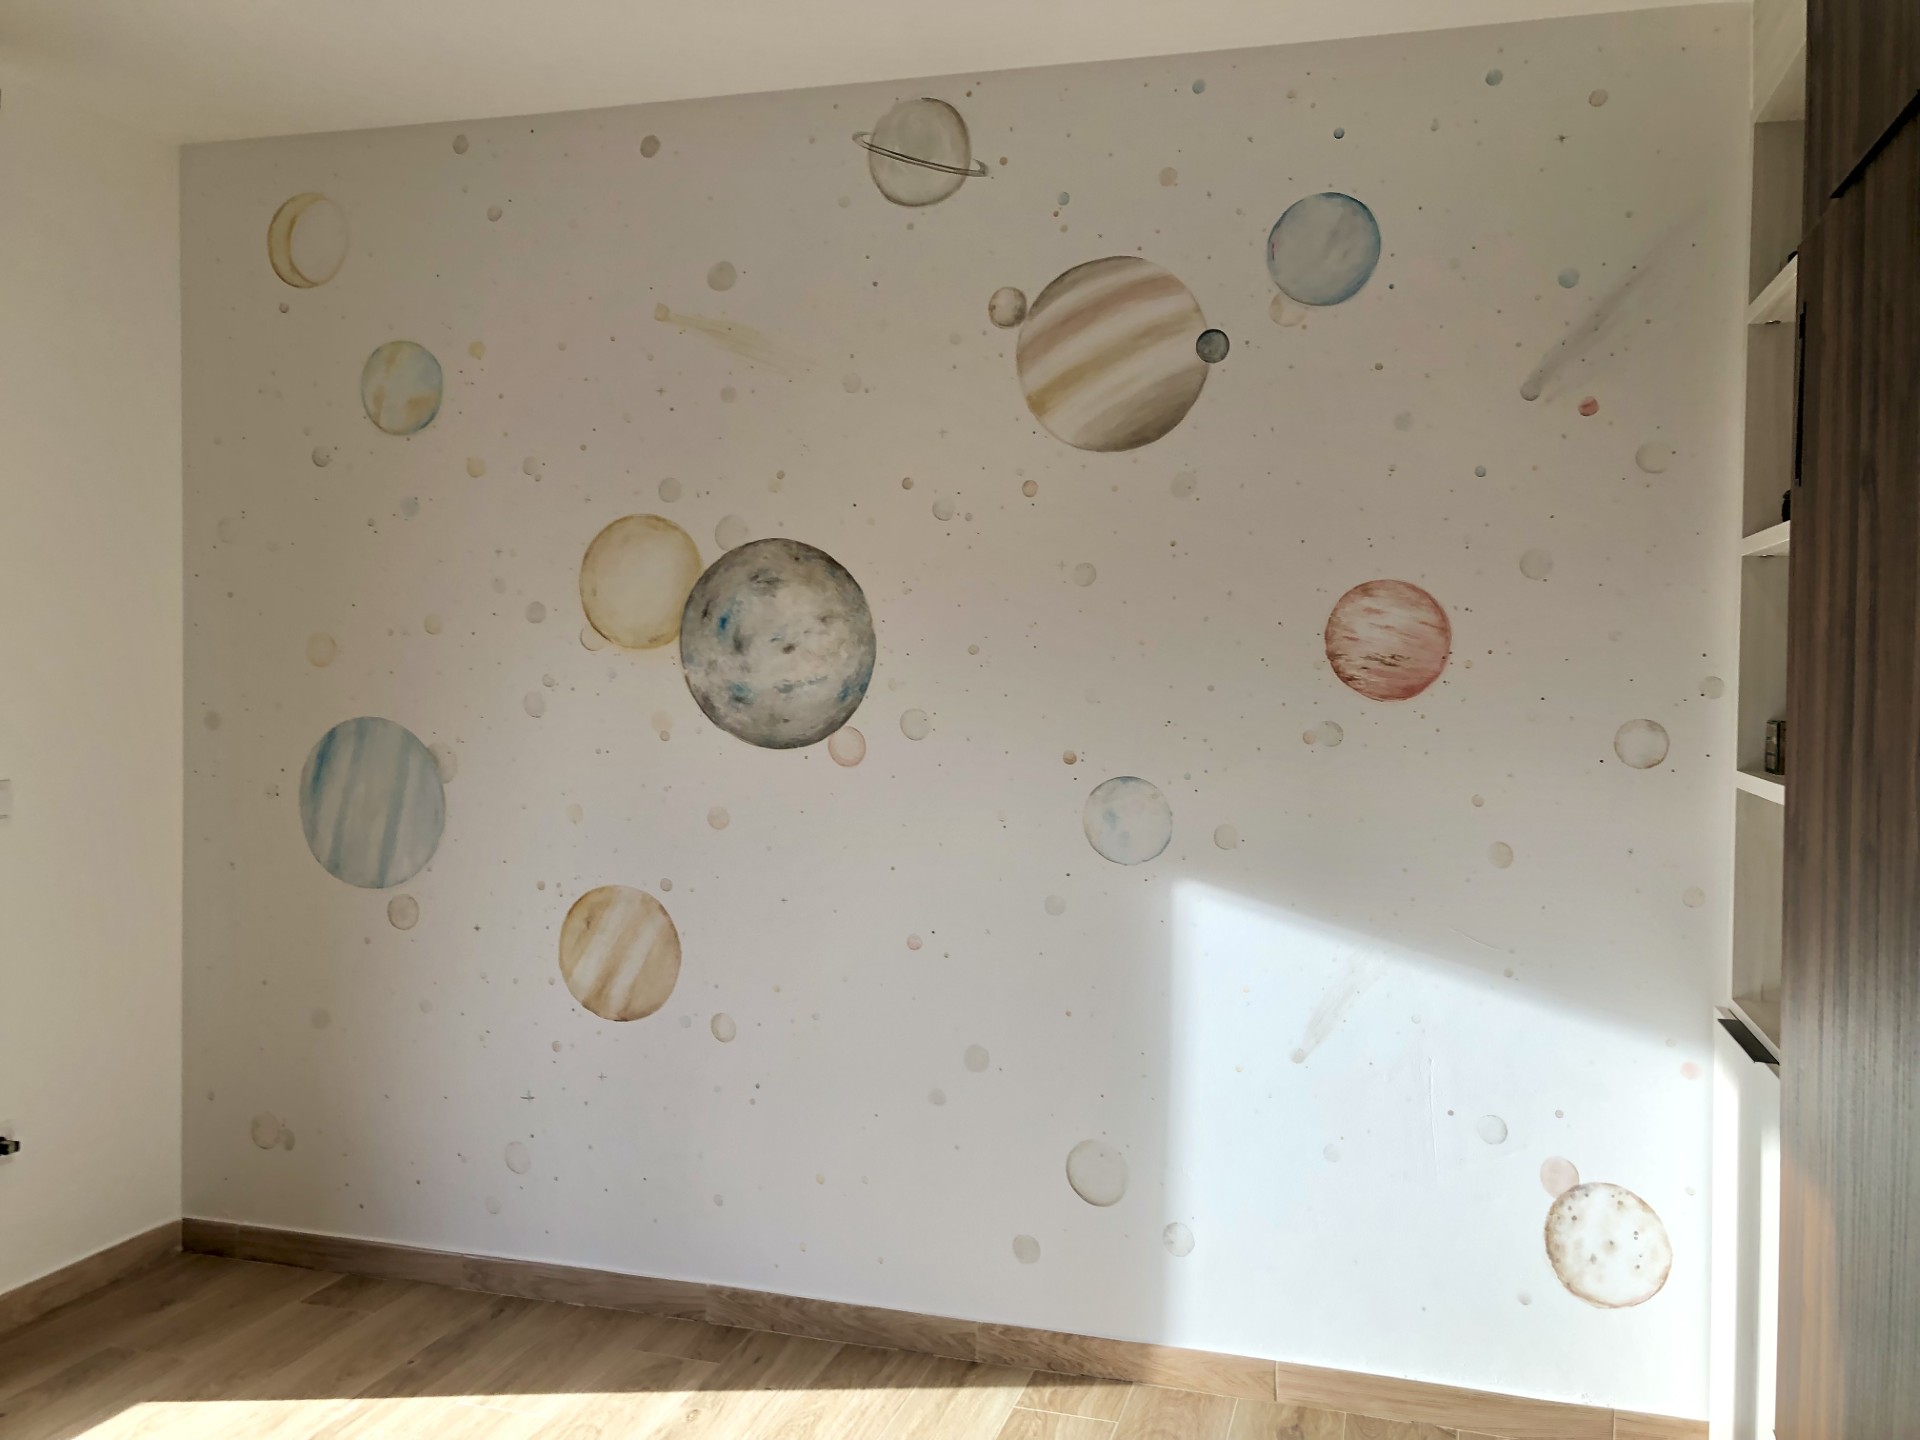 mural pintado del espacio